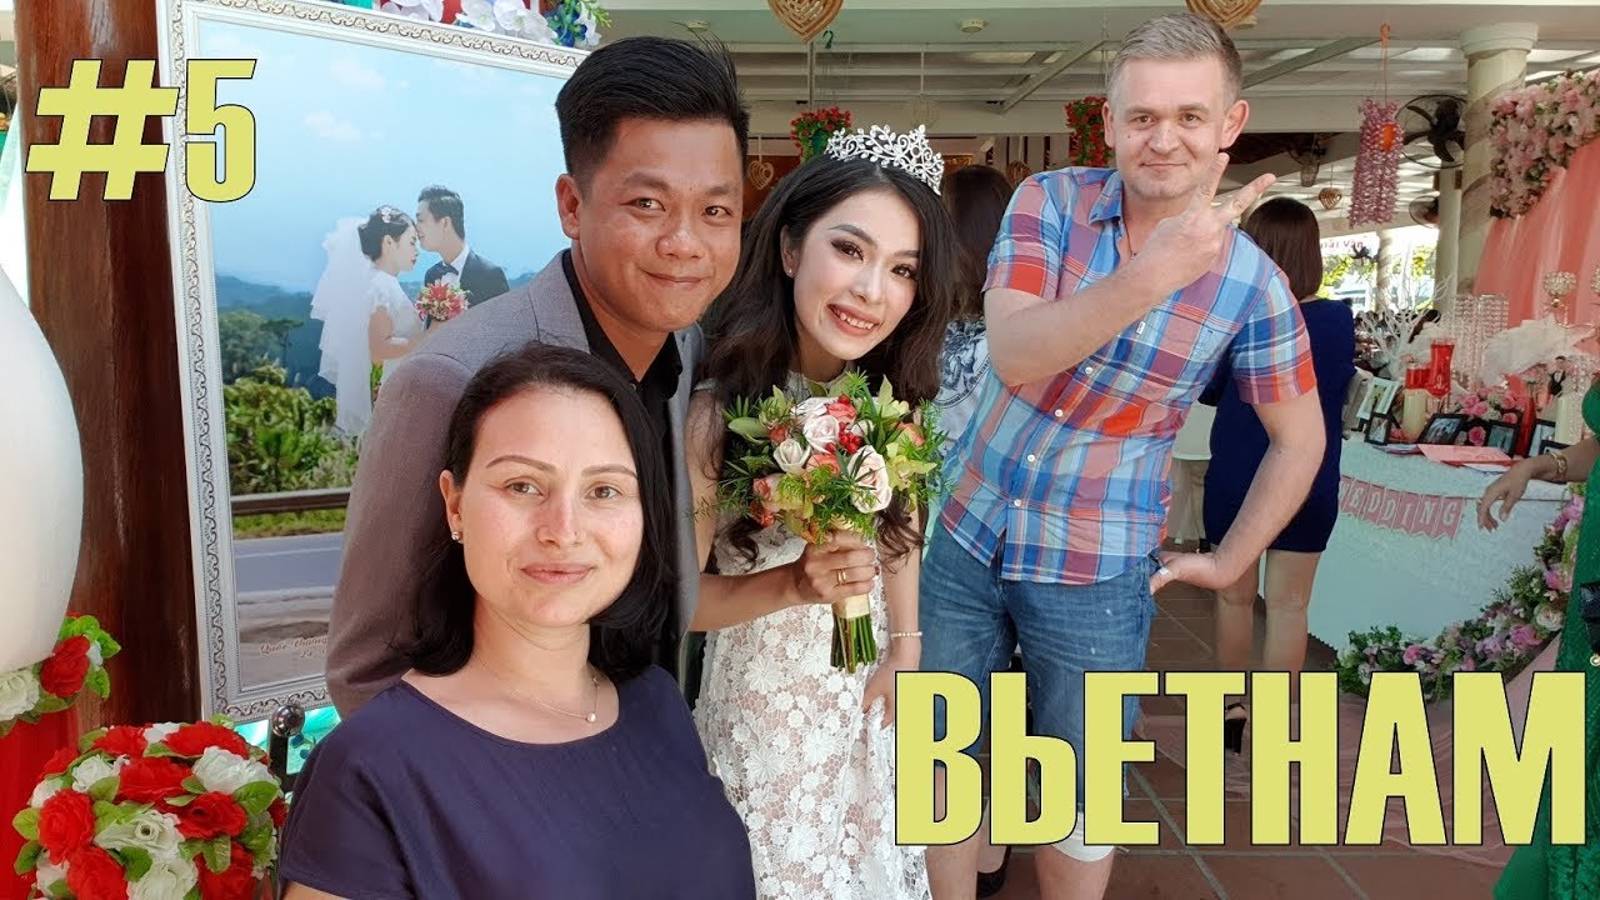 #5 Вьетнам 2018. Свадьба. 400 гостей. Пили пиво и пели песни.